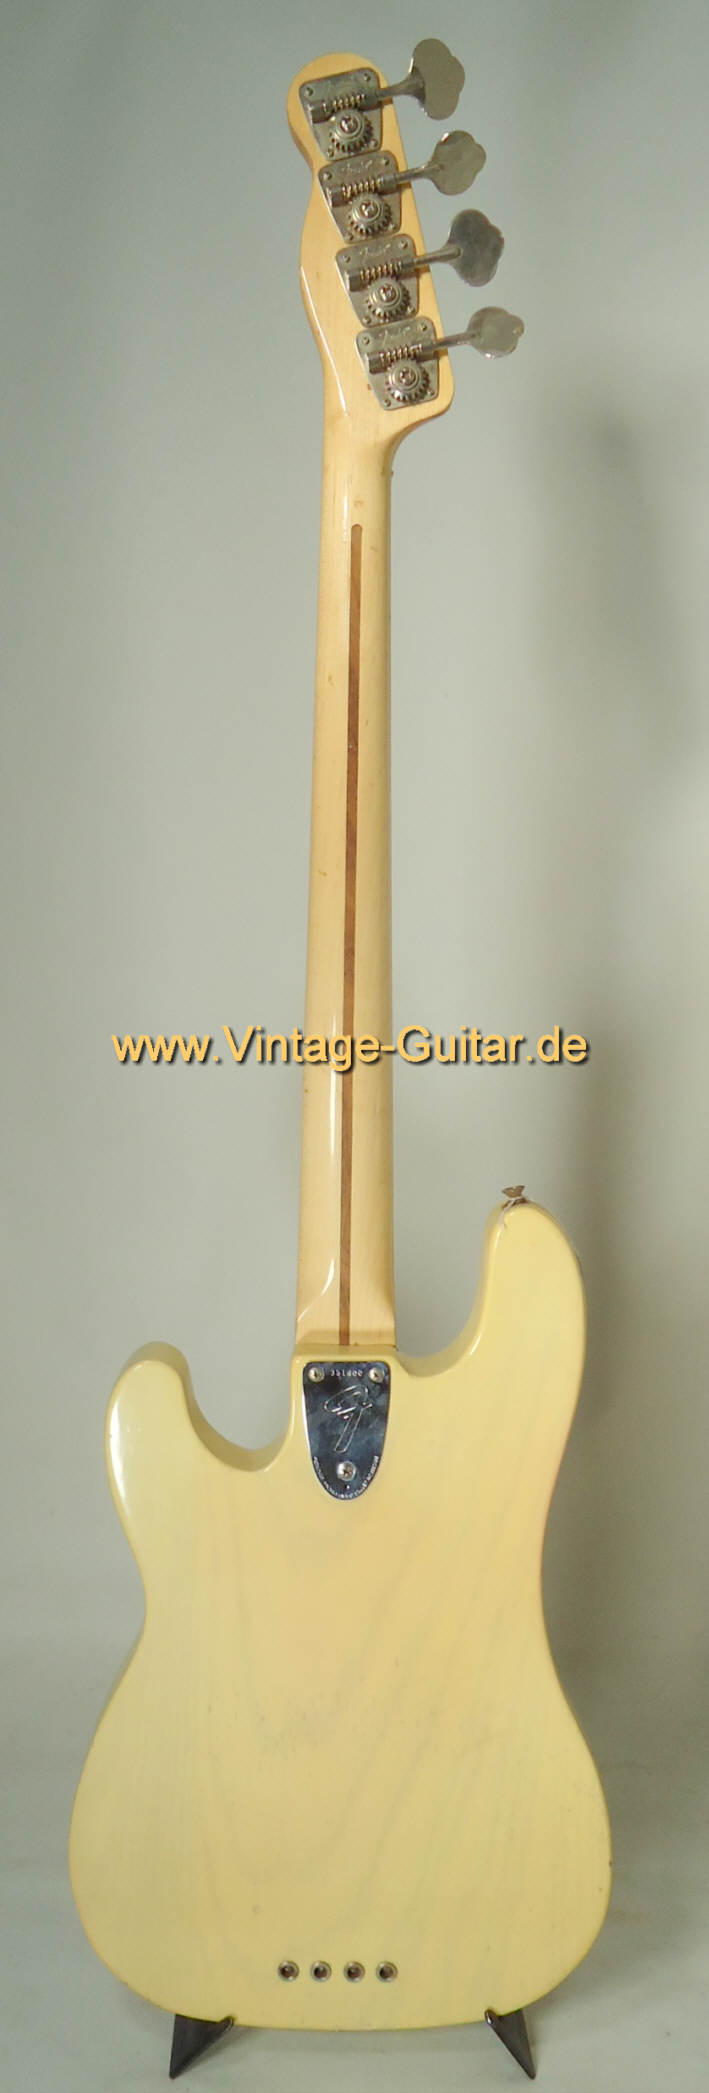 Fender-Telecaster-Bass-1972-c.jpg